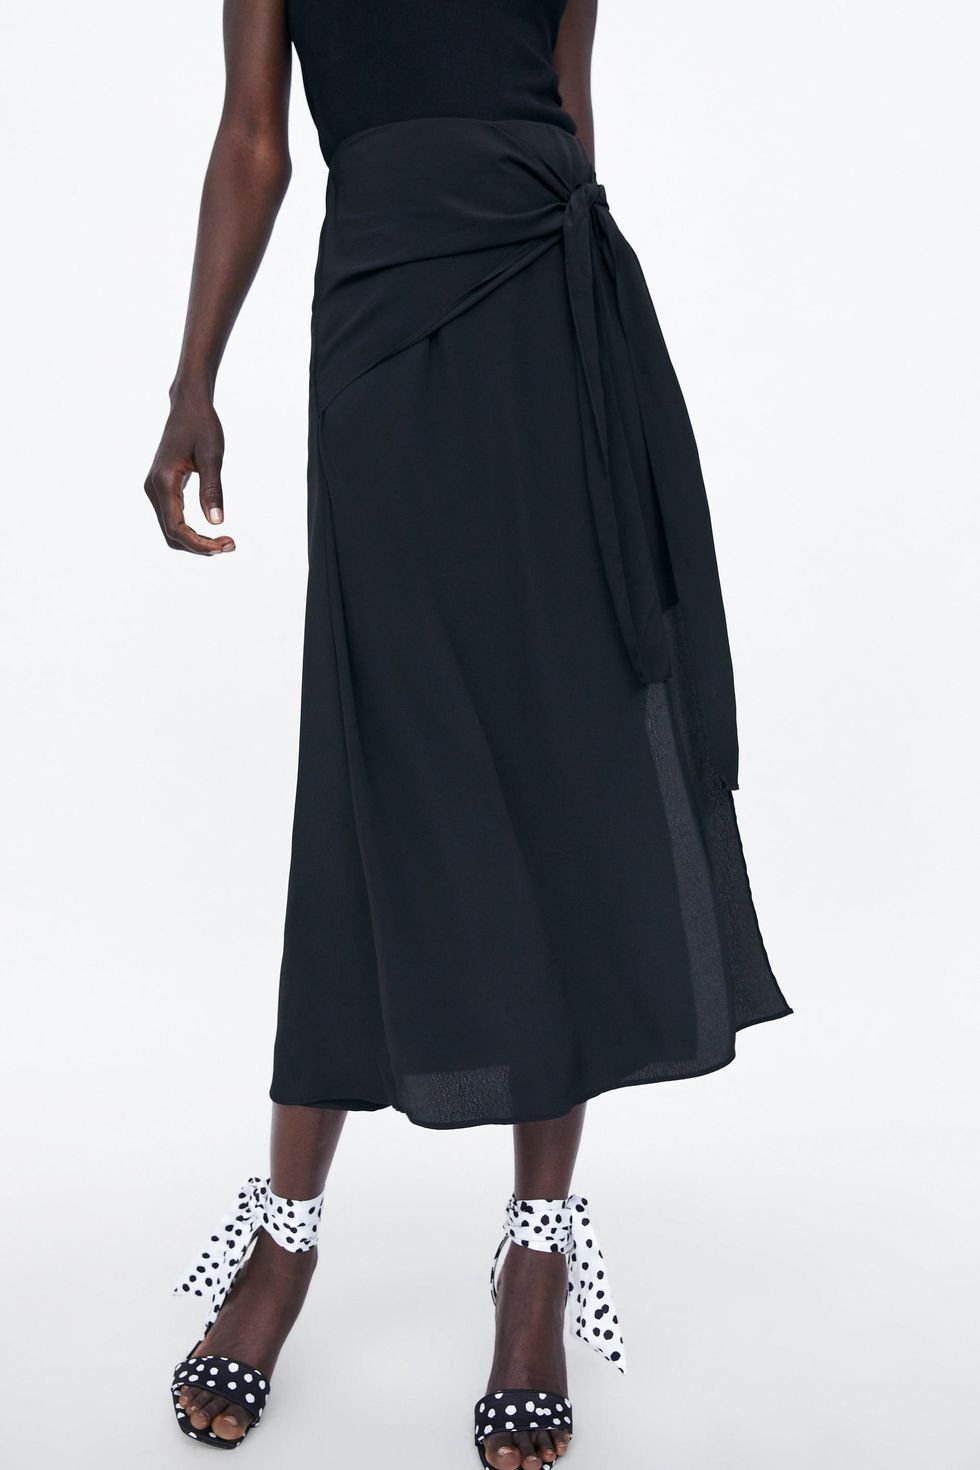 falda larga de Zara que arrasando en ventas en su tienda